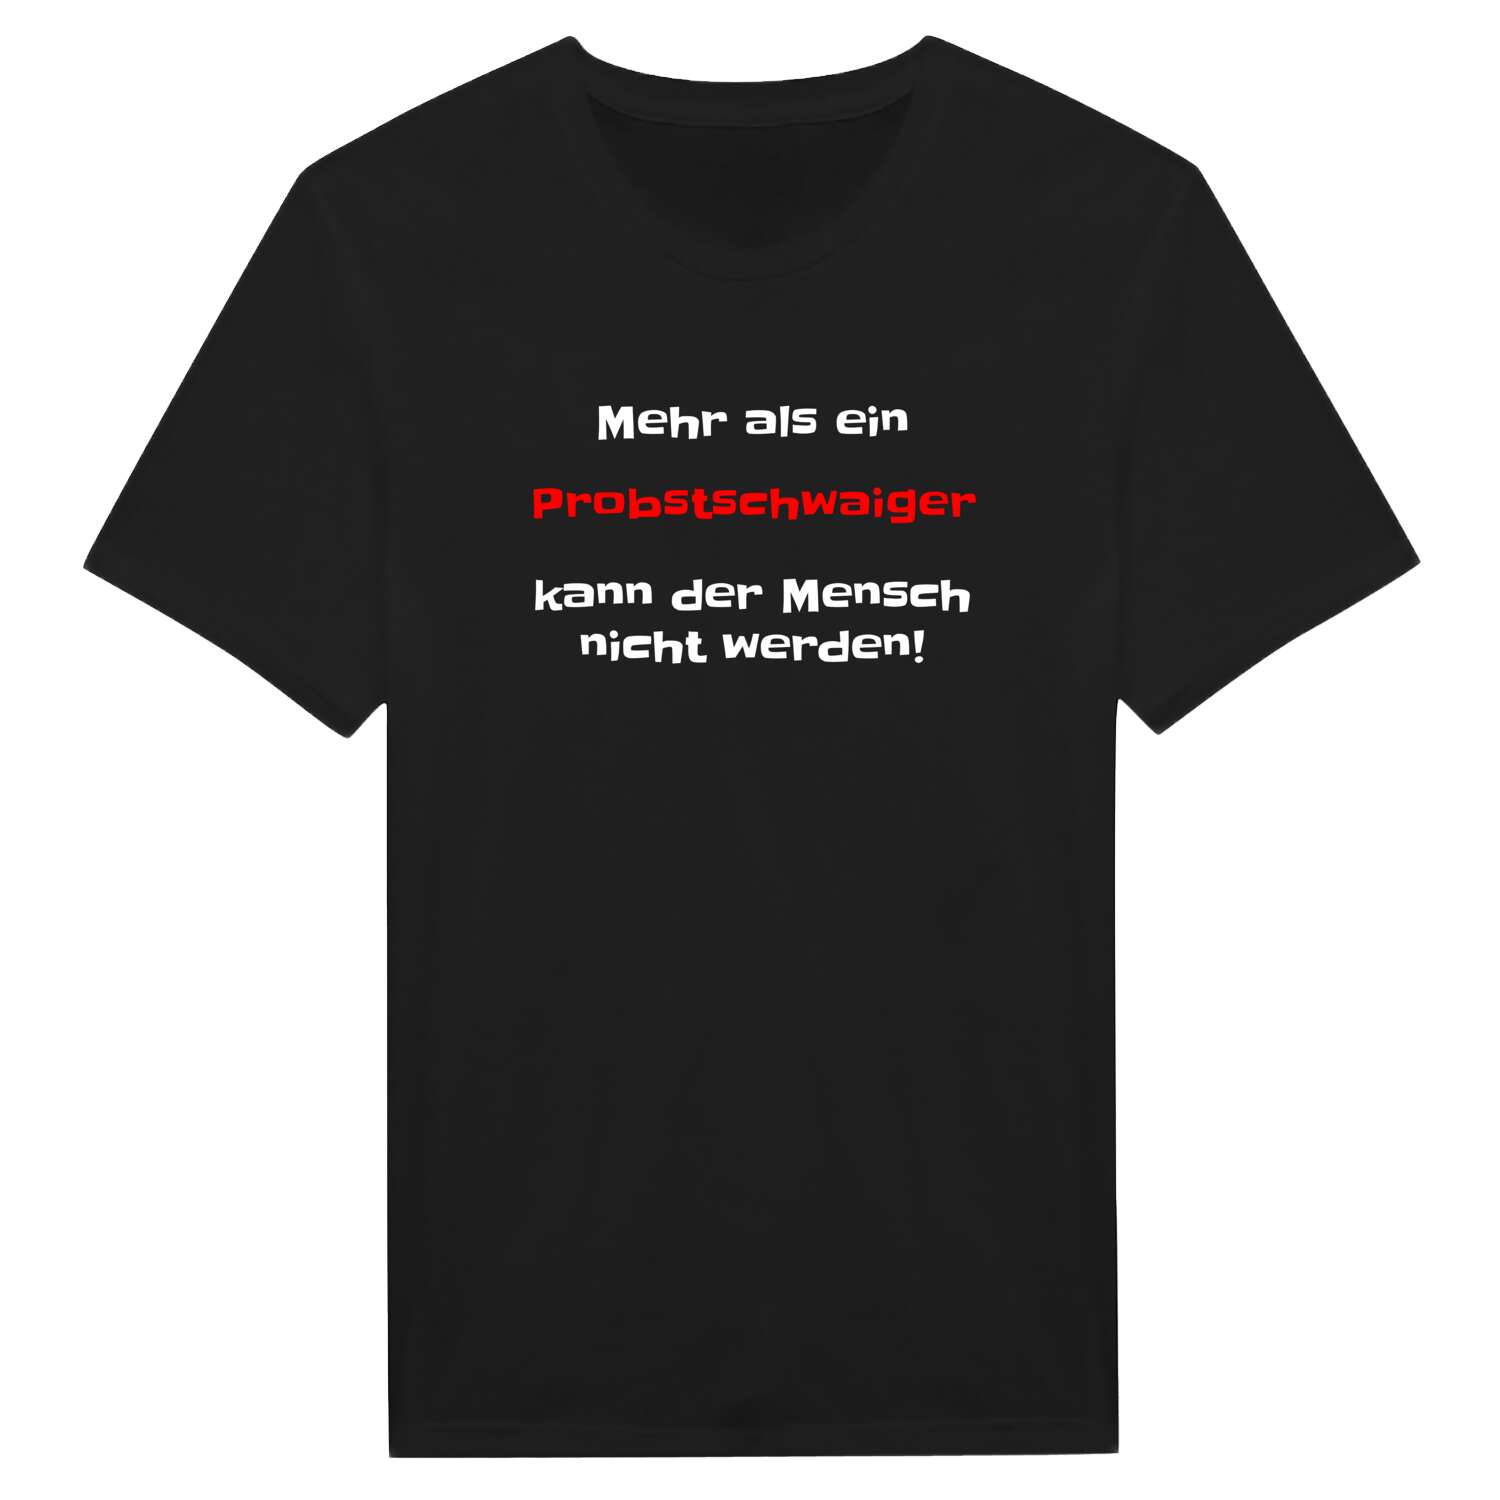 Probstschwaig T-Shirt »Mehr als ein«